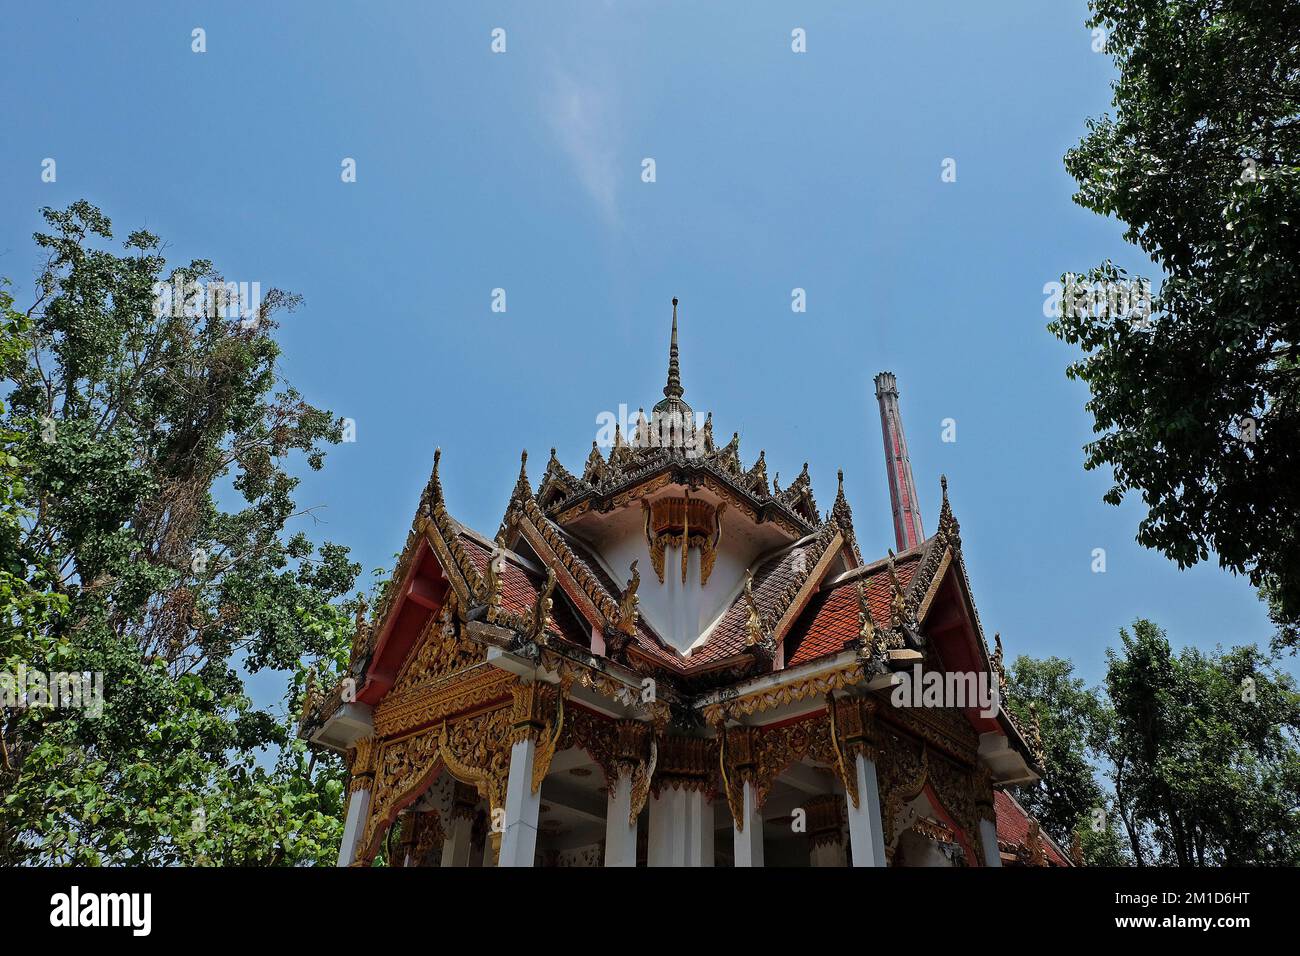 Architecture extérieure et conception de bâtiments du Crematoire bouddhiste (machine dans laquelle les corps sont brûlés jusqu'aux os), Thaïlande Banque D'Images